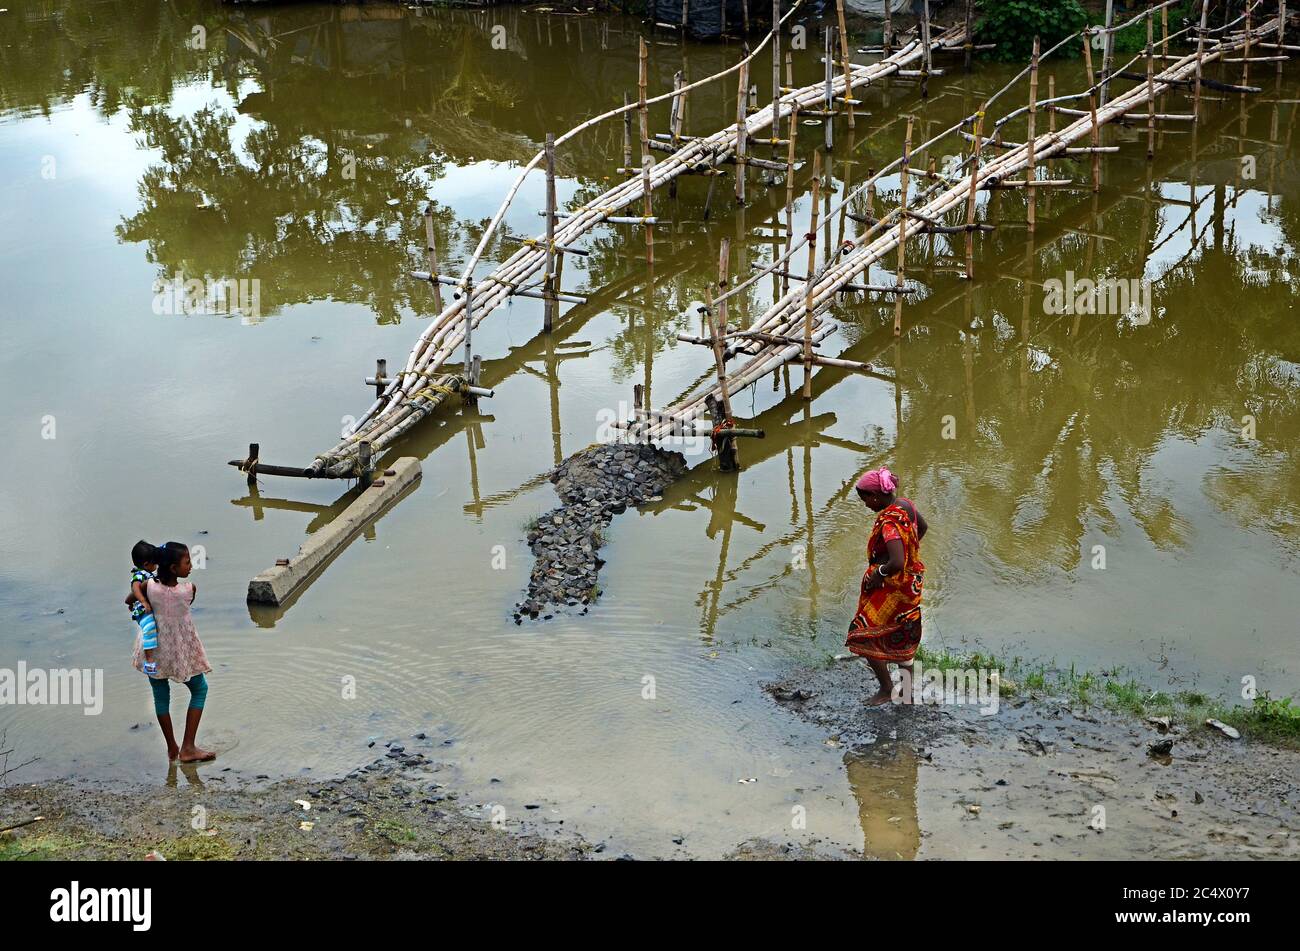 Il villaggio remoto completamente coperto acqua alluvione, la situazione di male della gente rurale villaggio per la loro vita quotidiana. Foto Stock